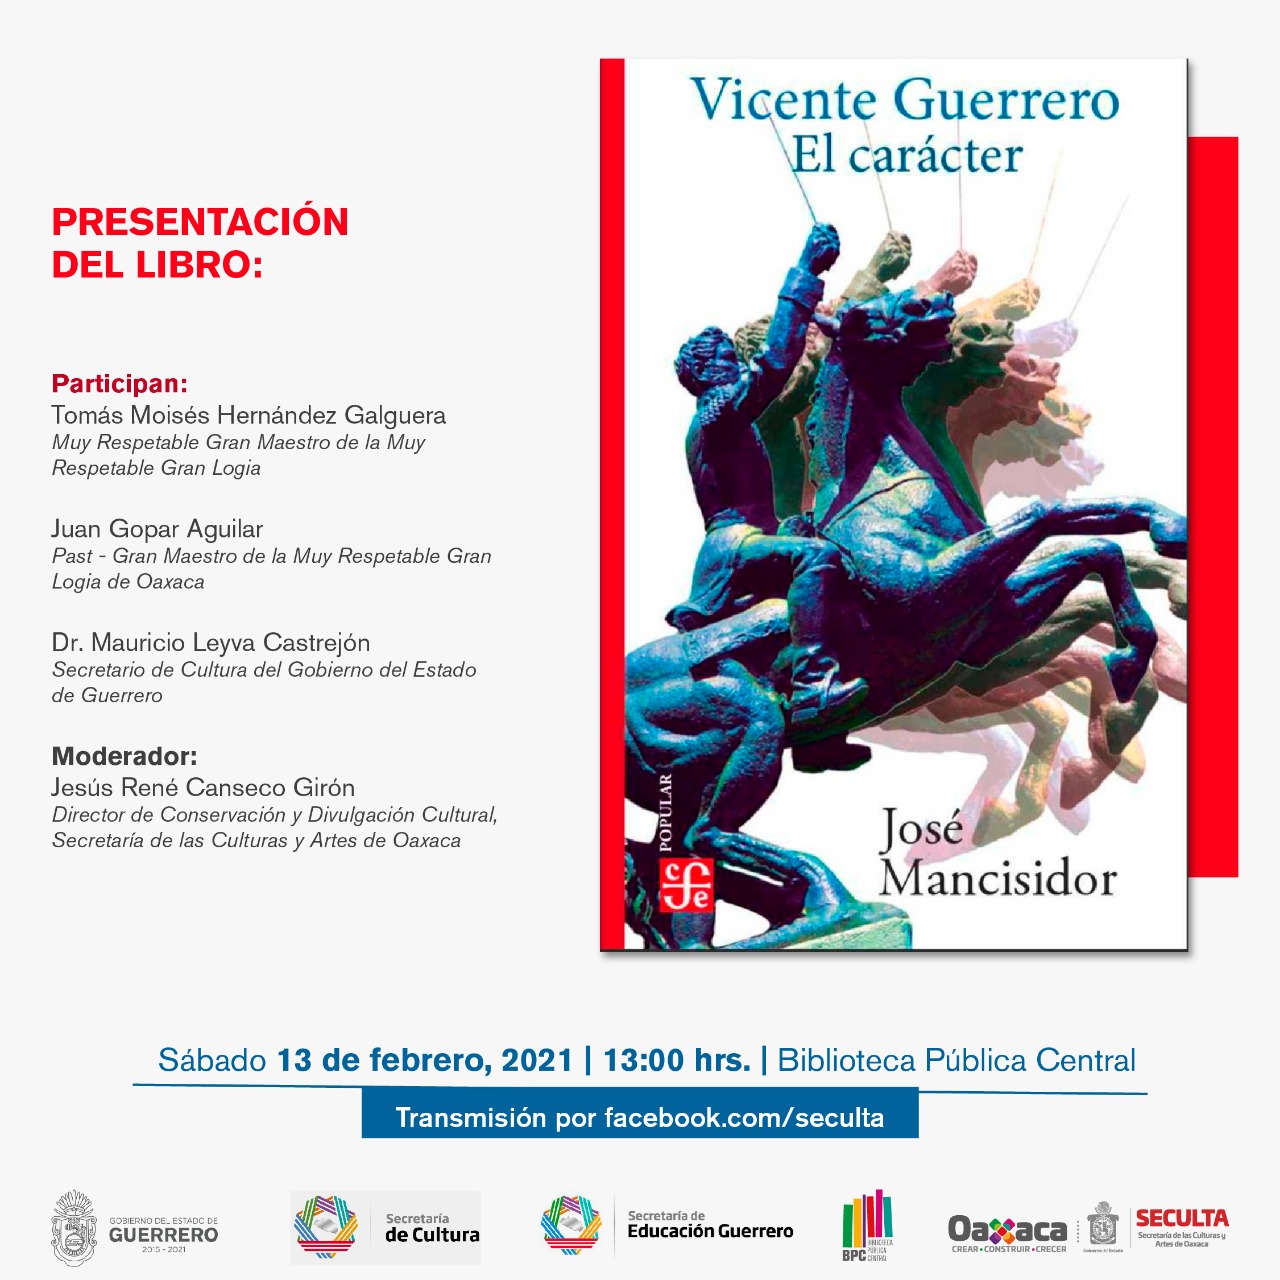 Presentan el libro “Vicente Guerrero: El carácter” del autor José Mancisidor